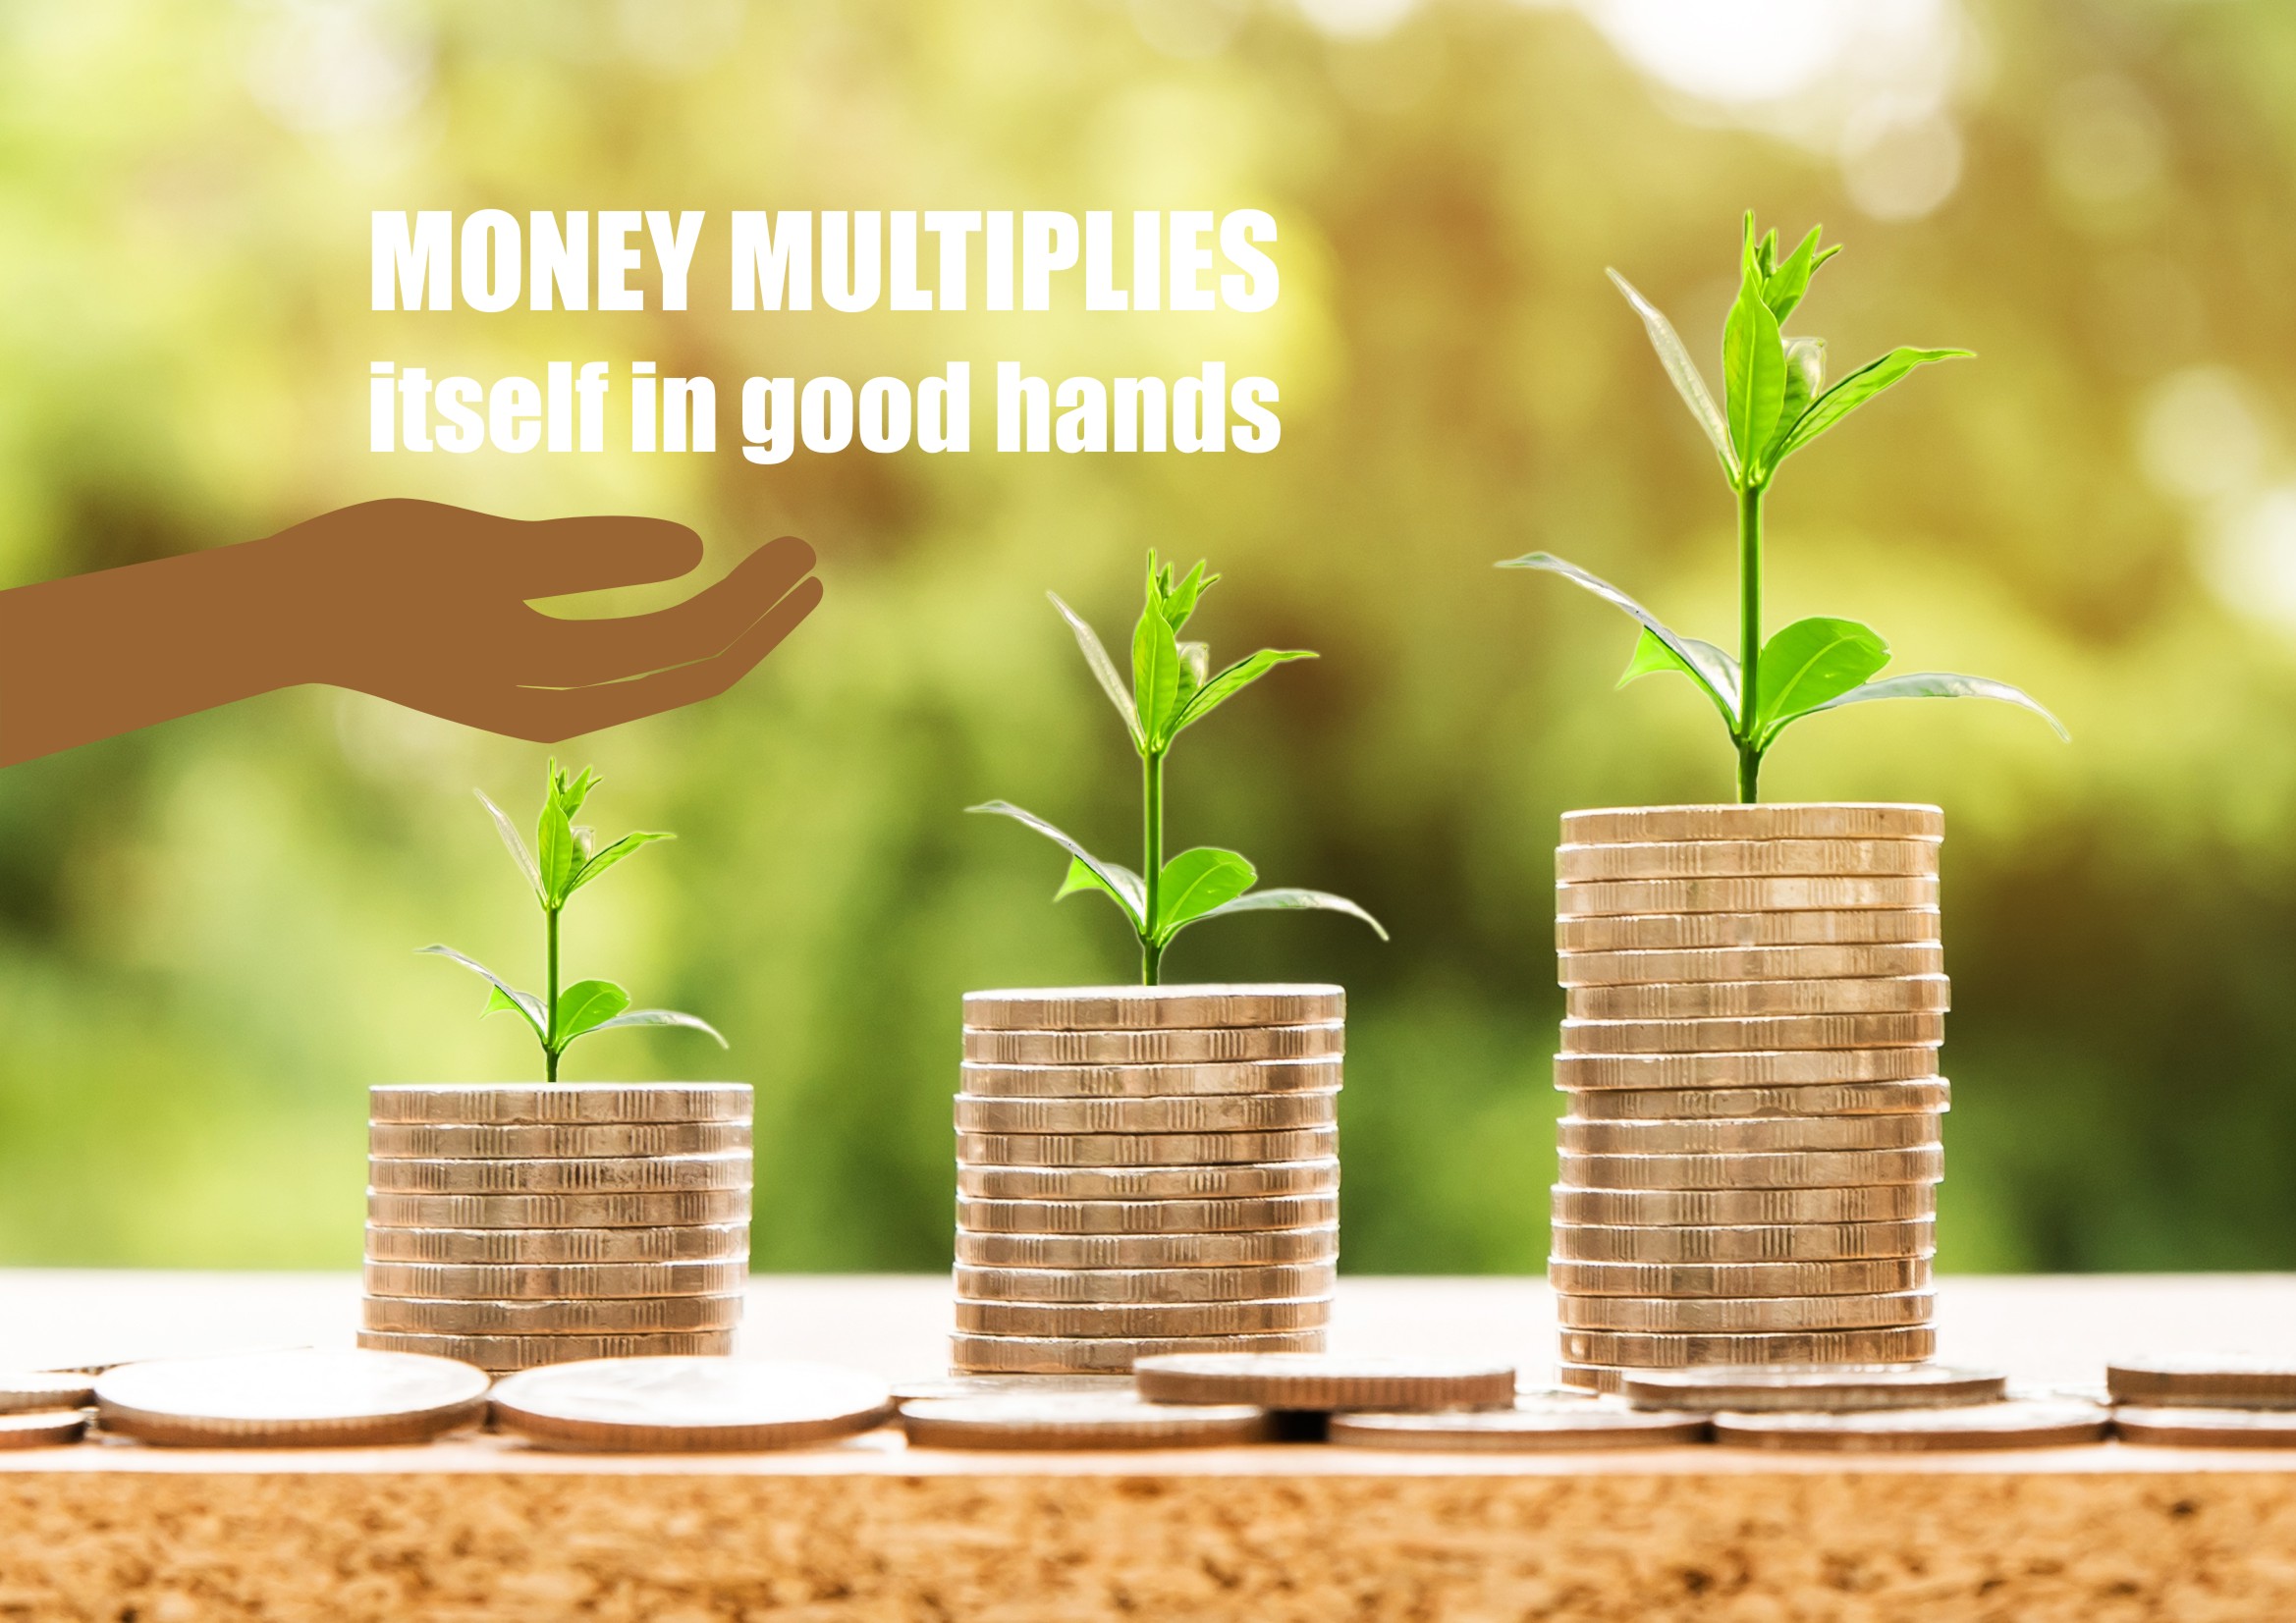 Money multiplies itself in good hands